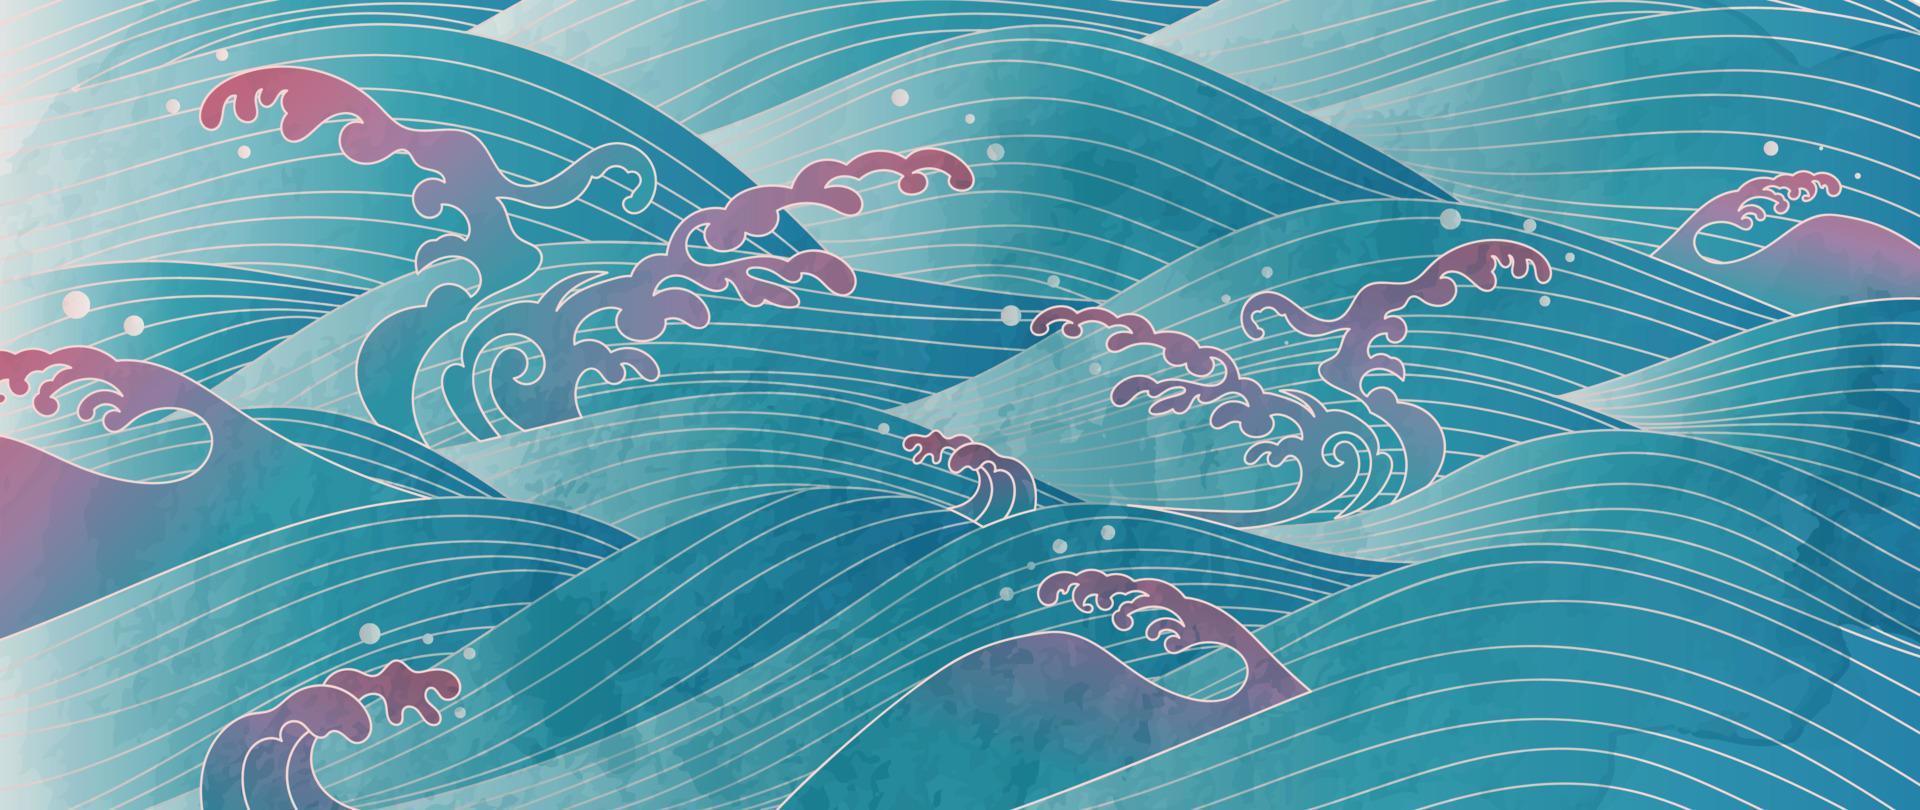 vetor de padrão de onda japonês tradicional. luxo oriental oceano onda metálica linha arte padrão fundo aquarela. ilustração de design de arte para impressão, tecido, pôster, decoração de casa e papel de parede.